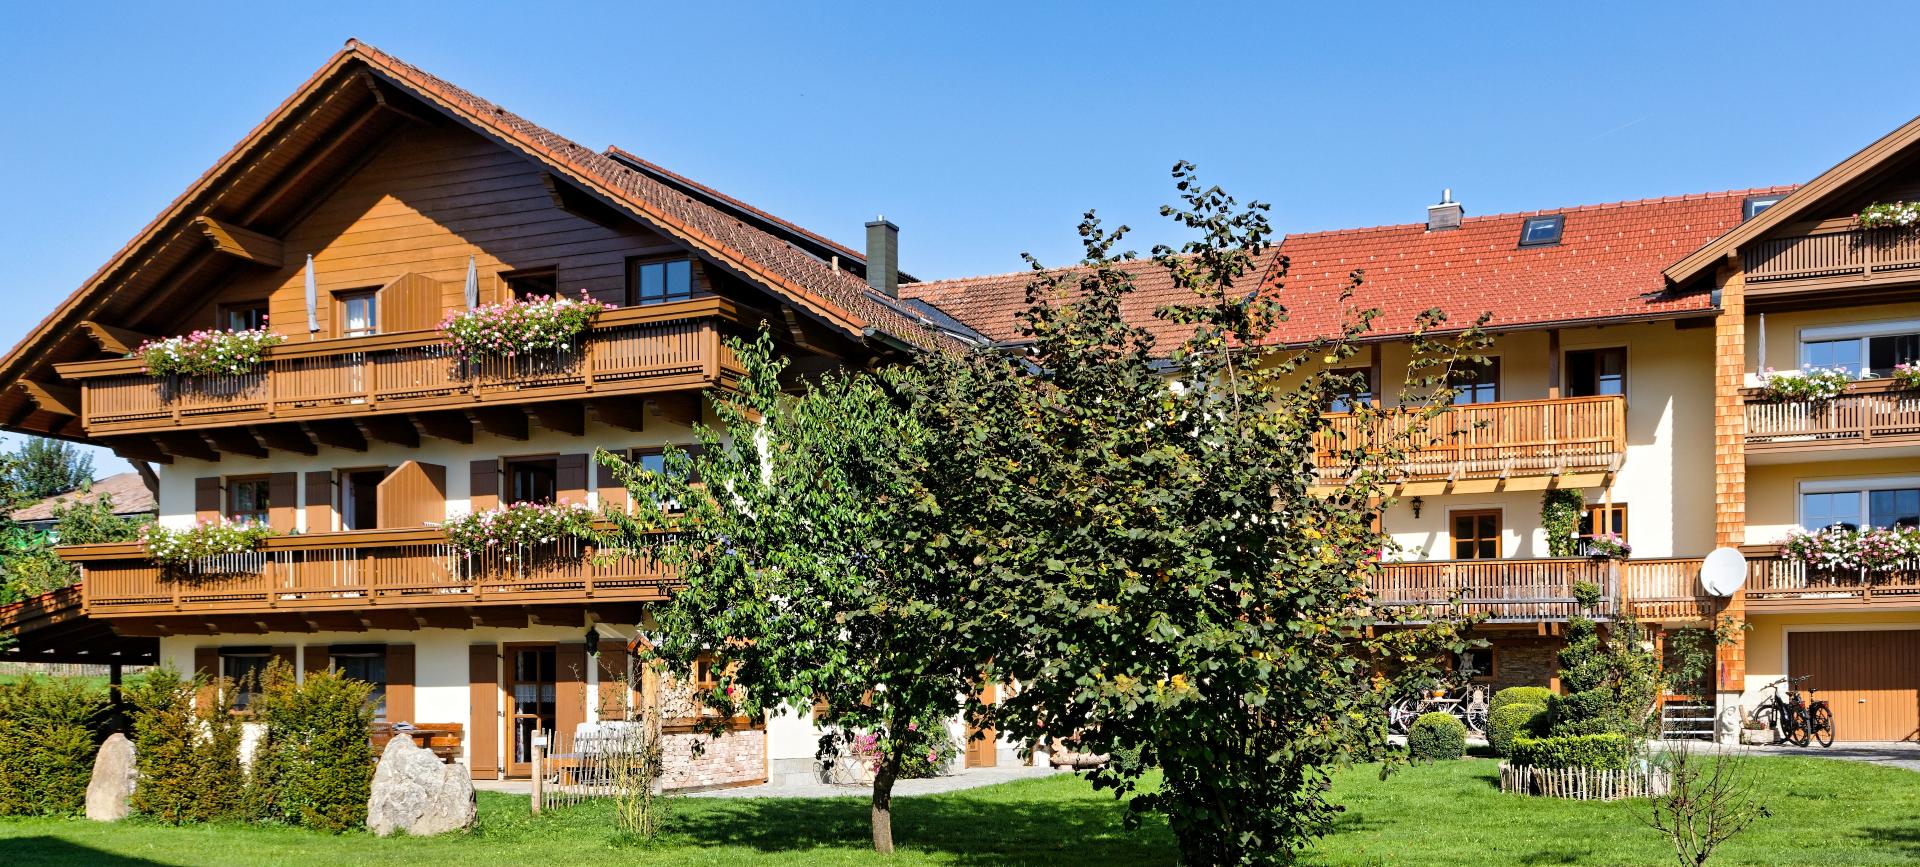 Bauernhof Wenzl (Zwiesel). Heuboden Ferienhaus im Bayerischer Wald